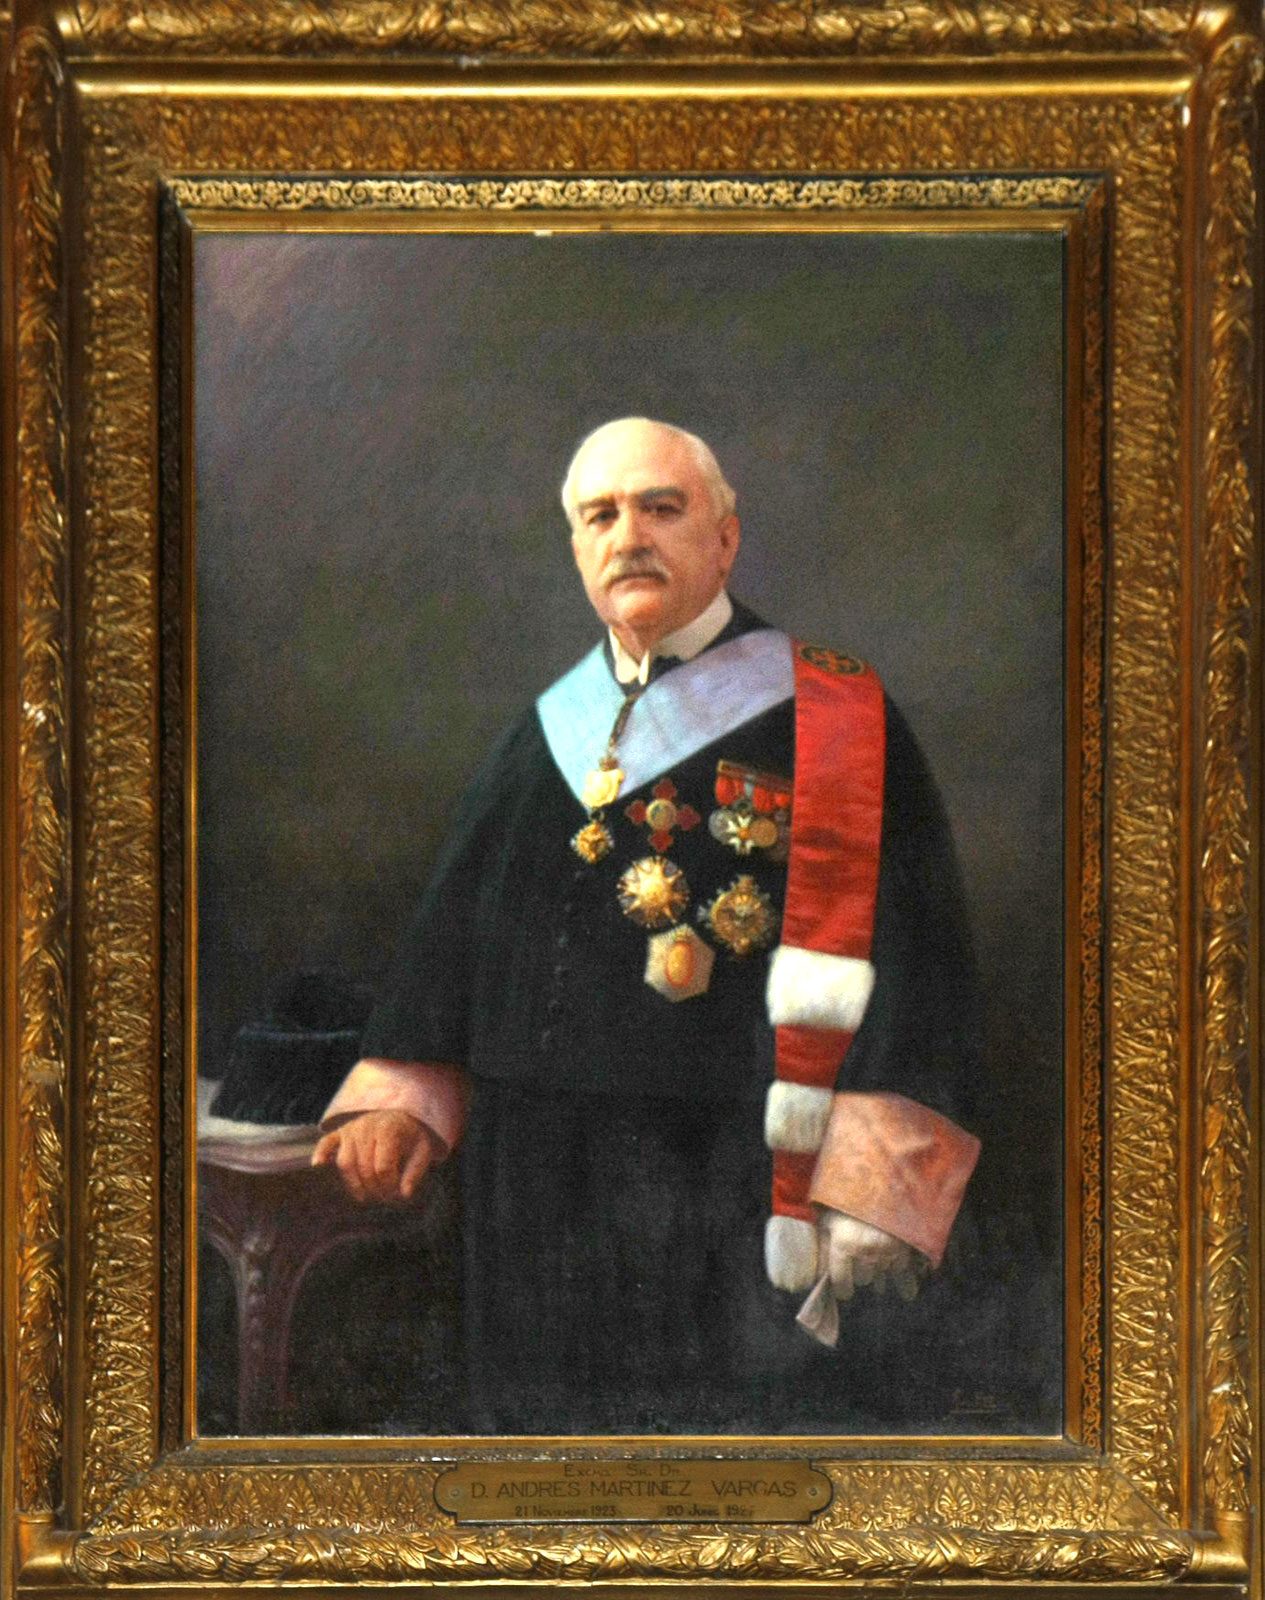 Retrat del rector Andrés Martínez Vargas